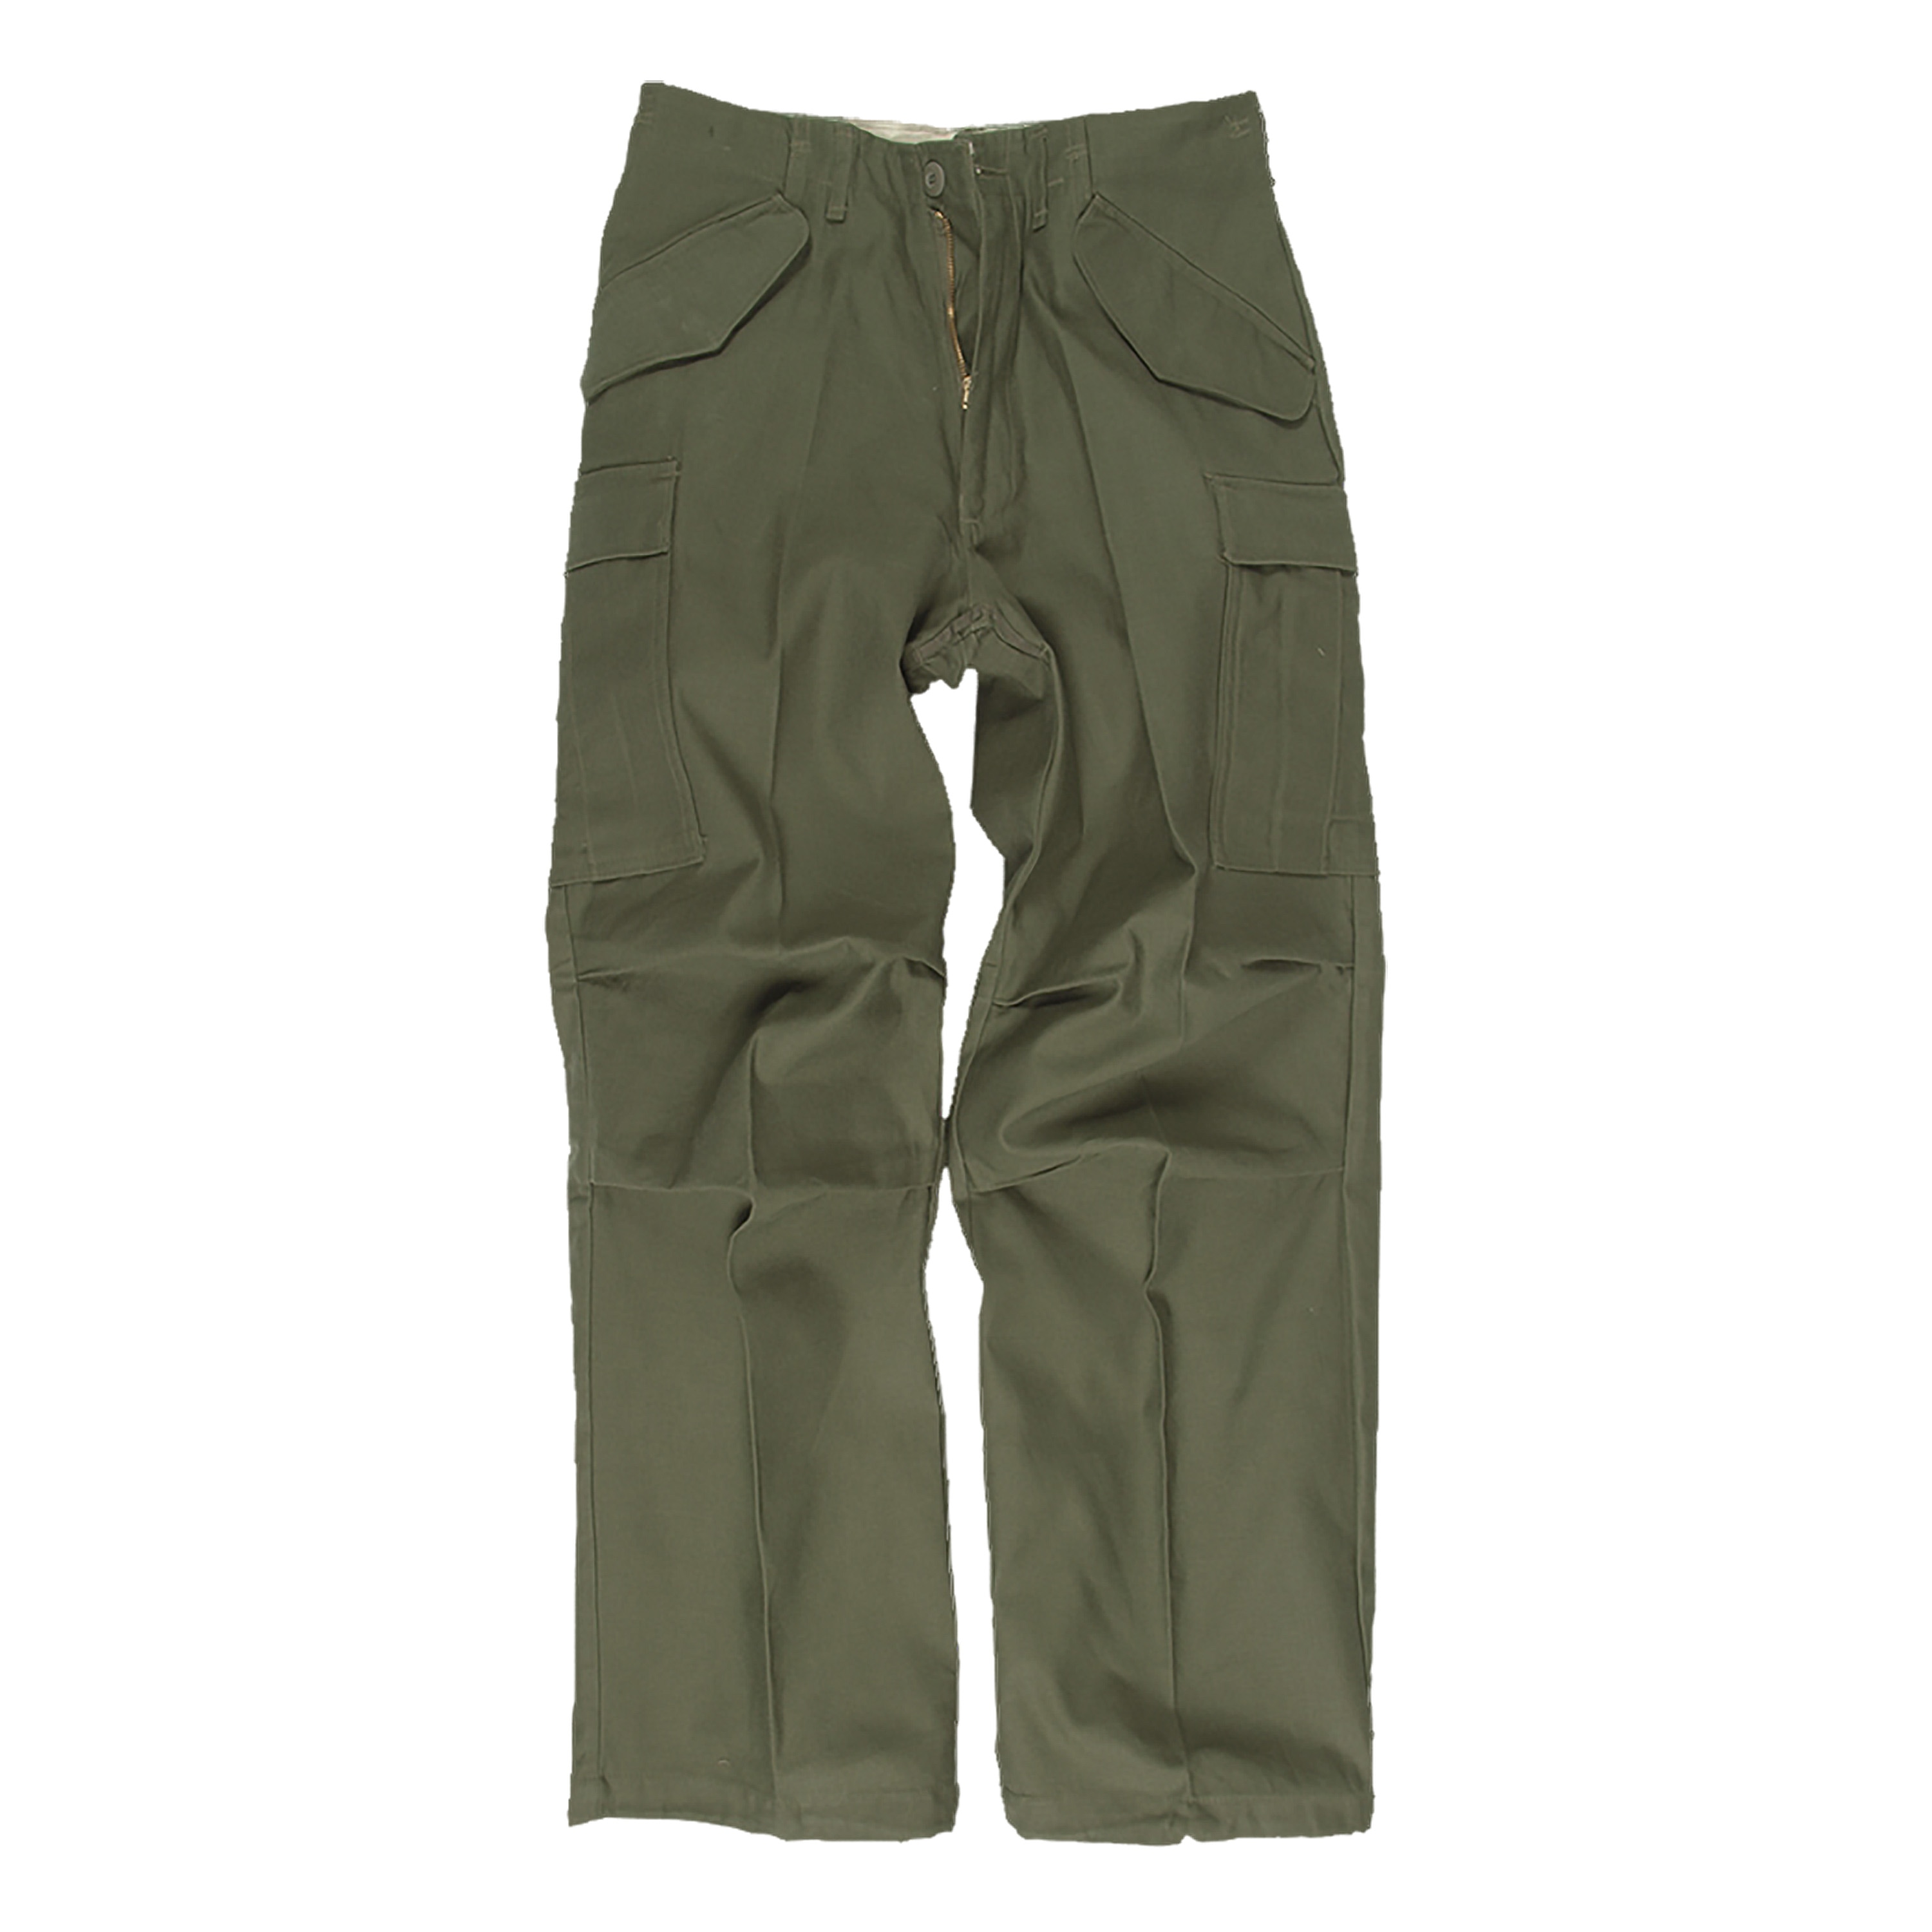 U.S. Field Pants M65 olive